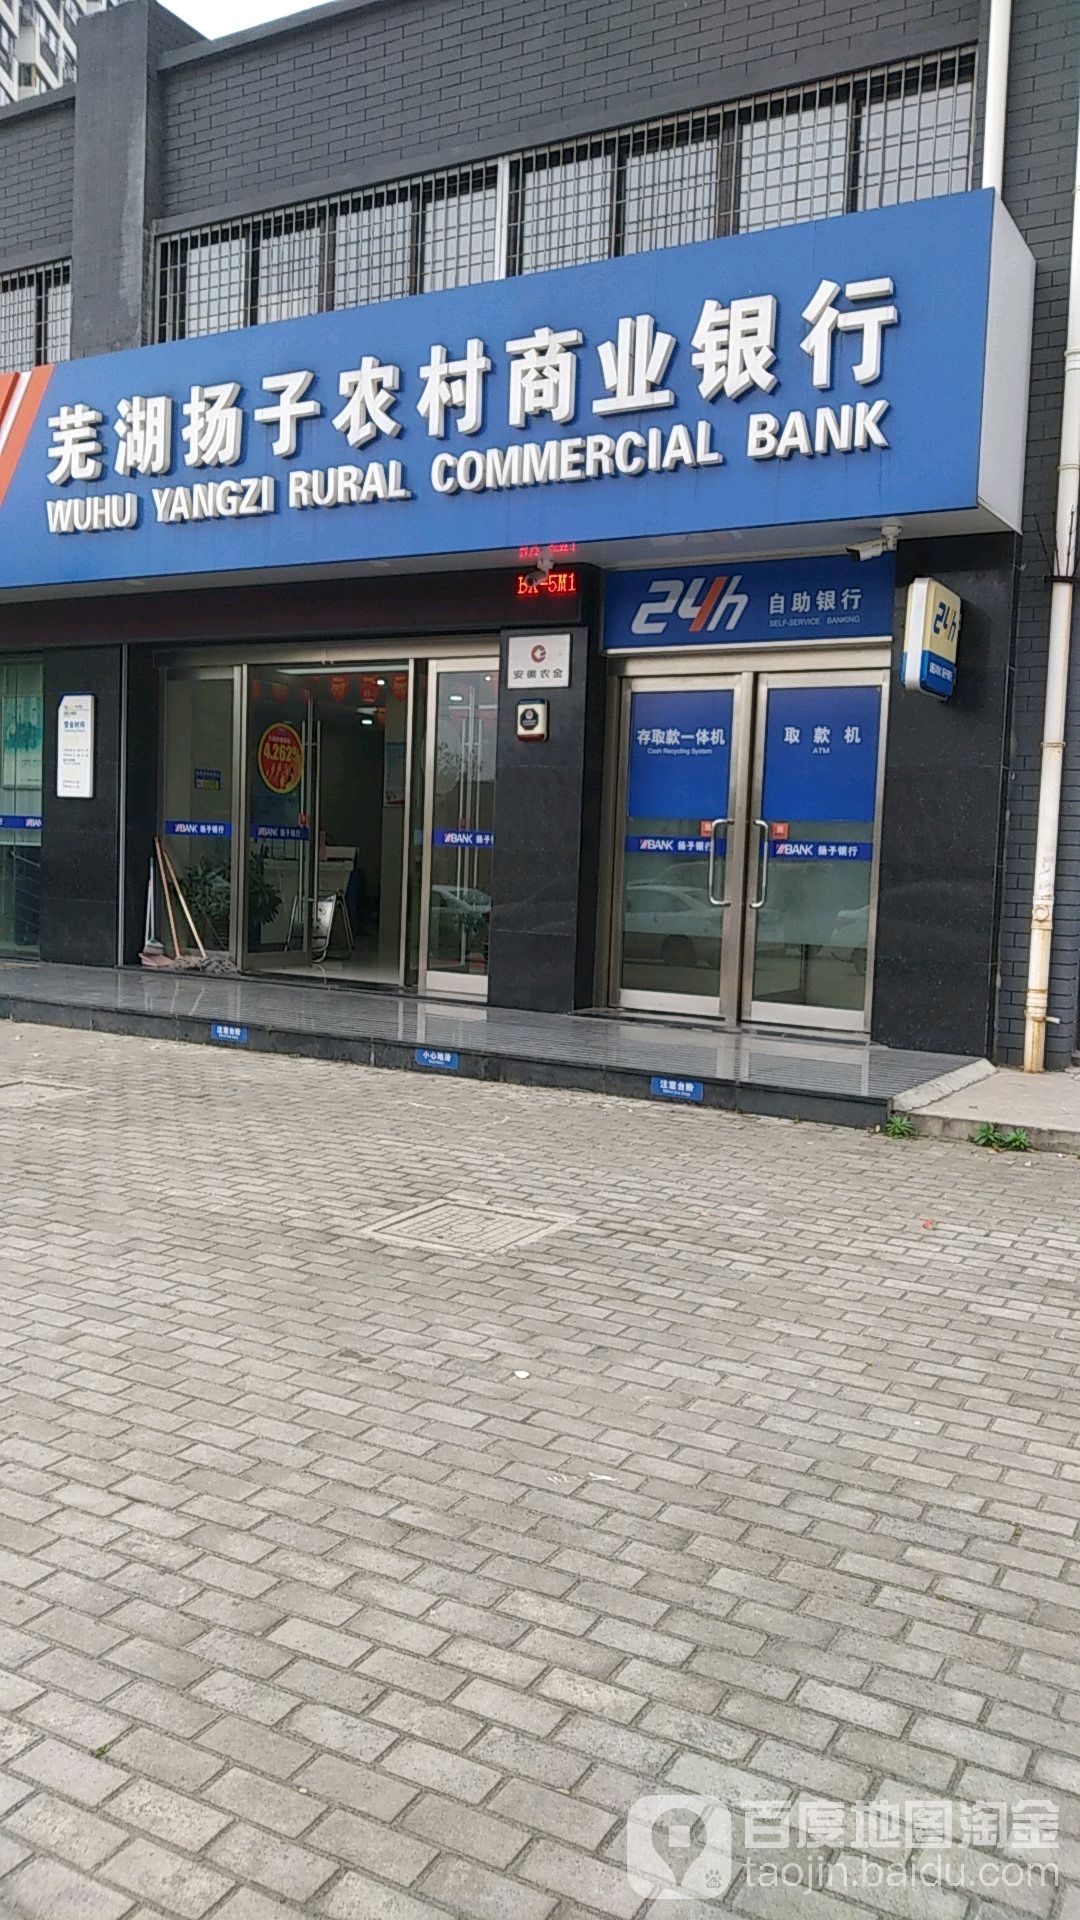 蕪湖揚子農村商業銀行